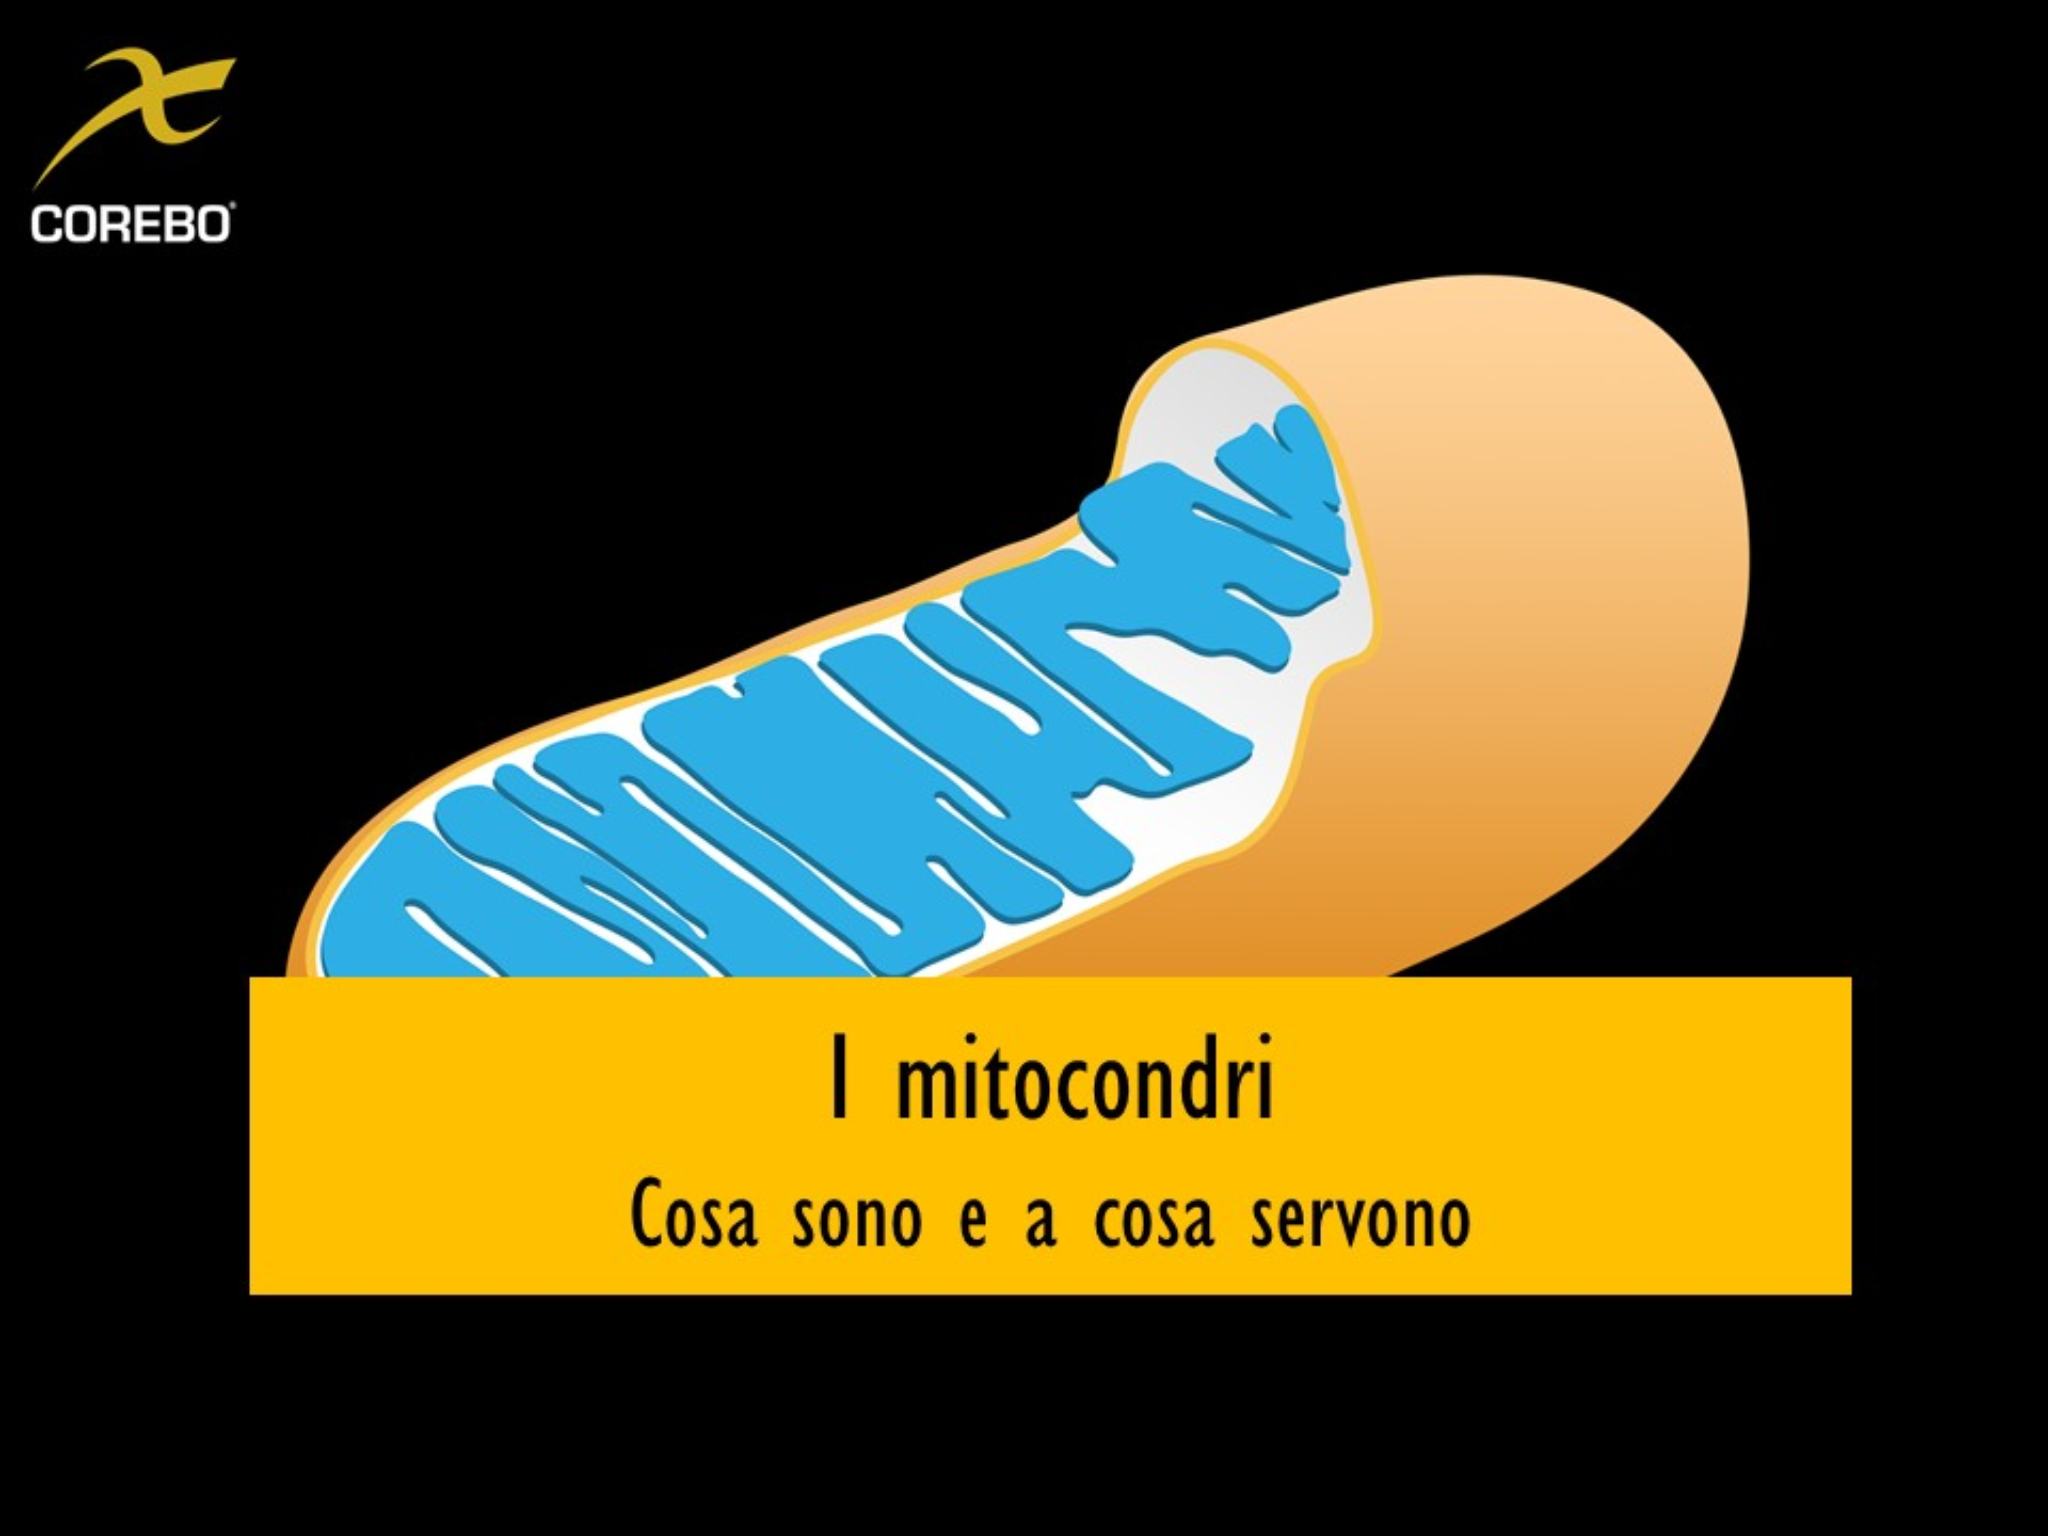 Cosa sono e a cosa servono i mitocondri